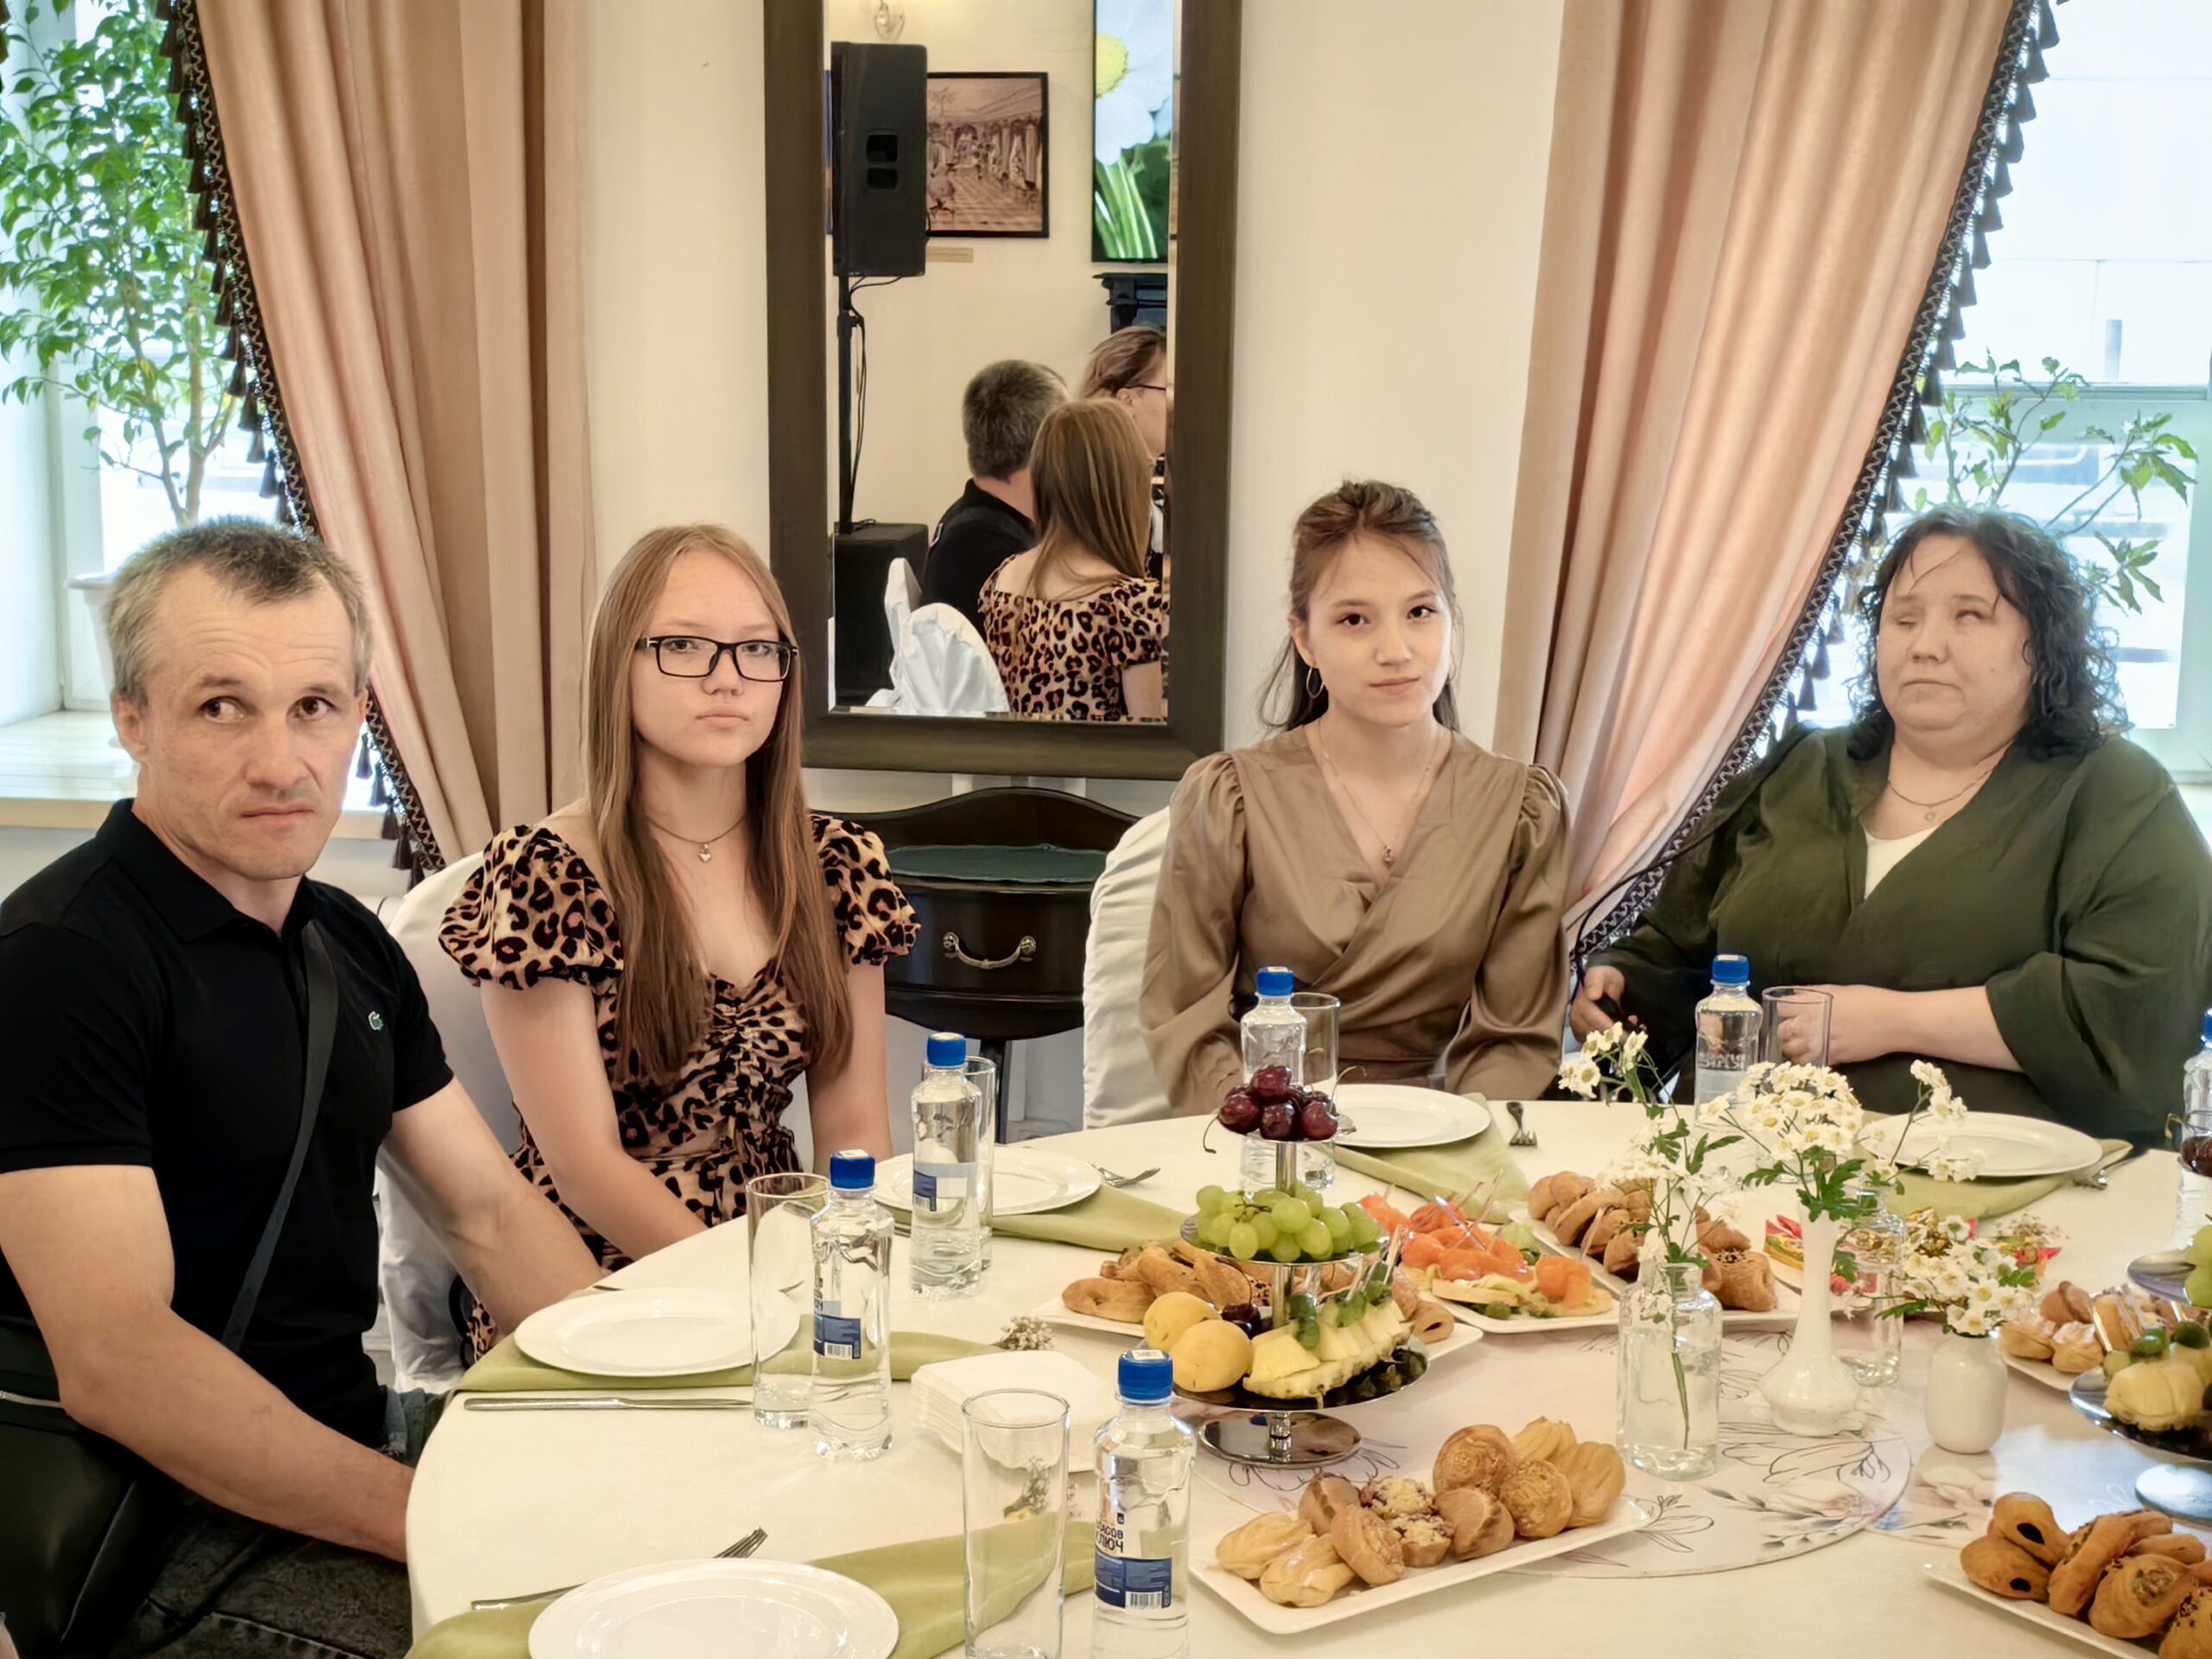 Негаданно, нежданно: семья из Усть-Катава стала гостями торжественного приёма Законодательного собрания Челябинской области